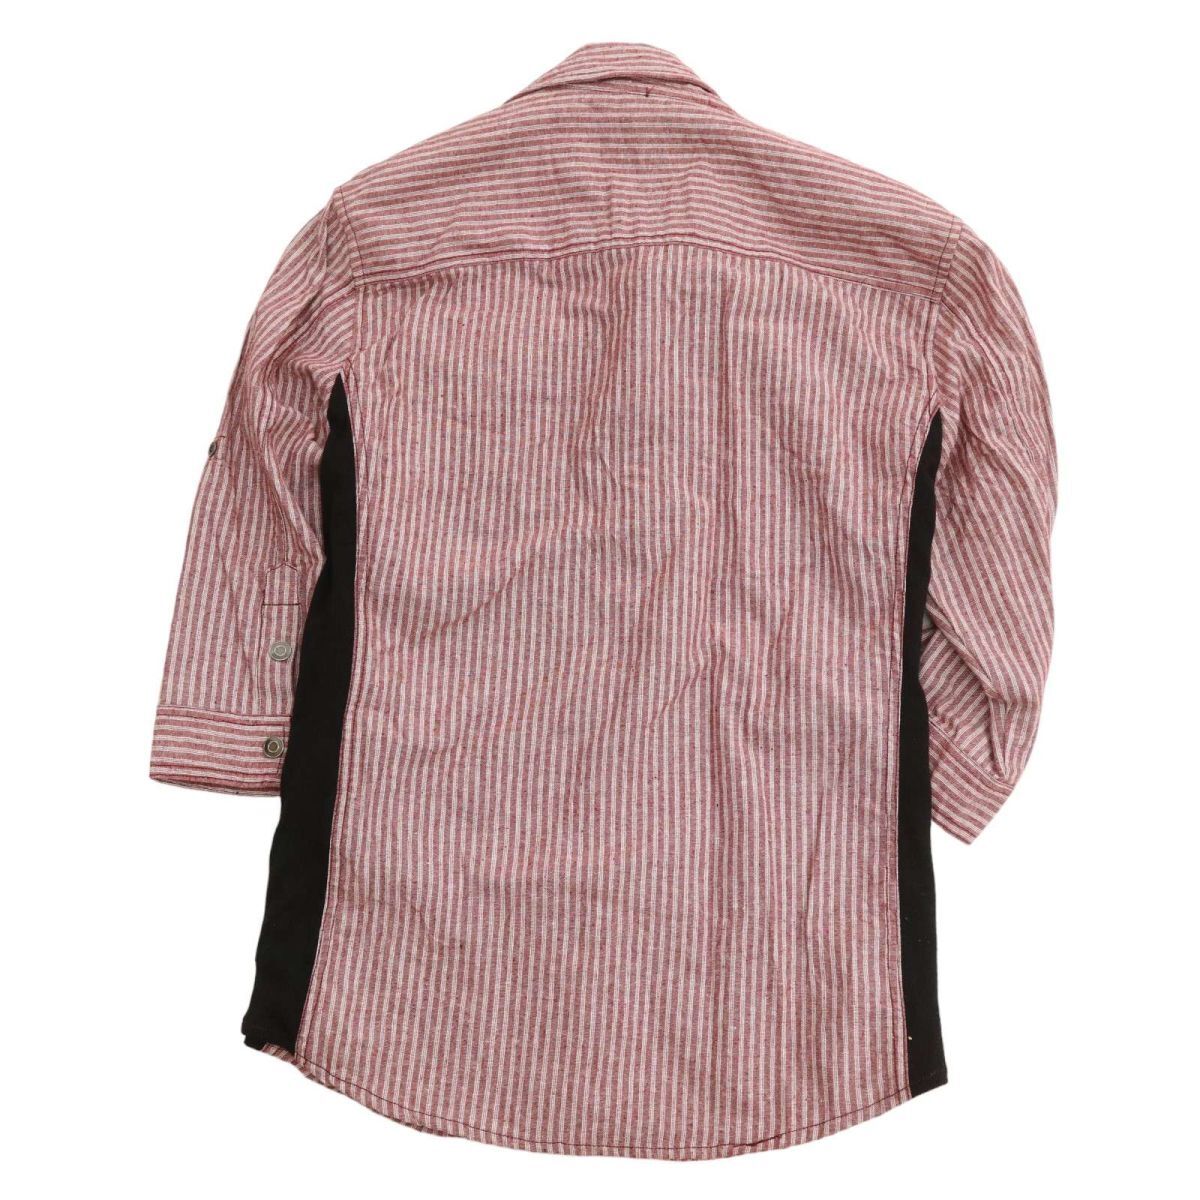 semantic designse man tik дизайн воротник тросик * лен linen7 минут рукав переключатель полоса рубашка work shirt Sz.LL мужской C4T01804_2#M